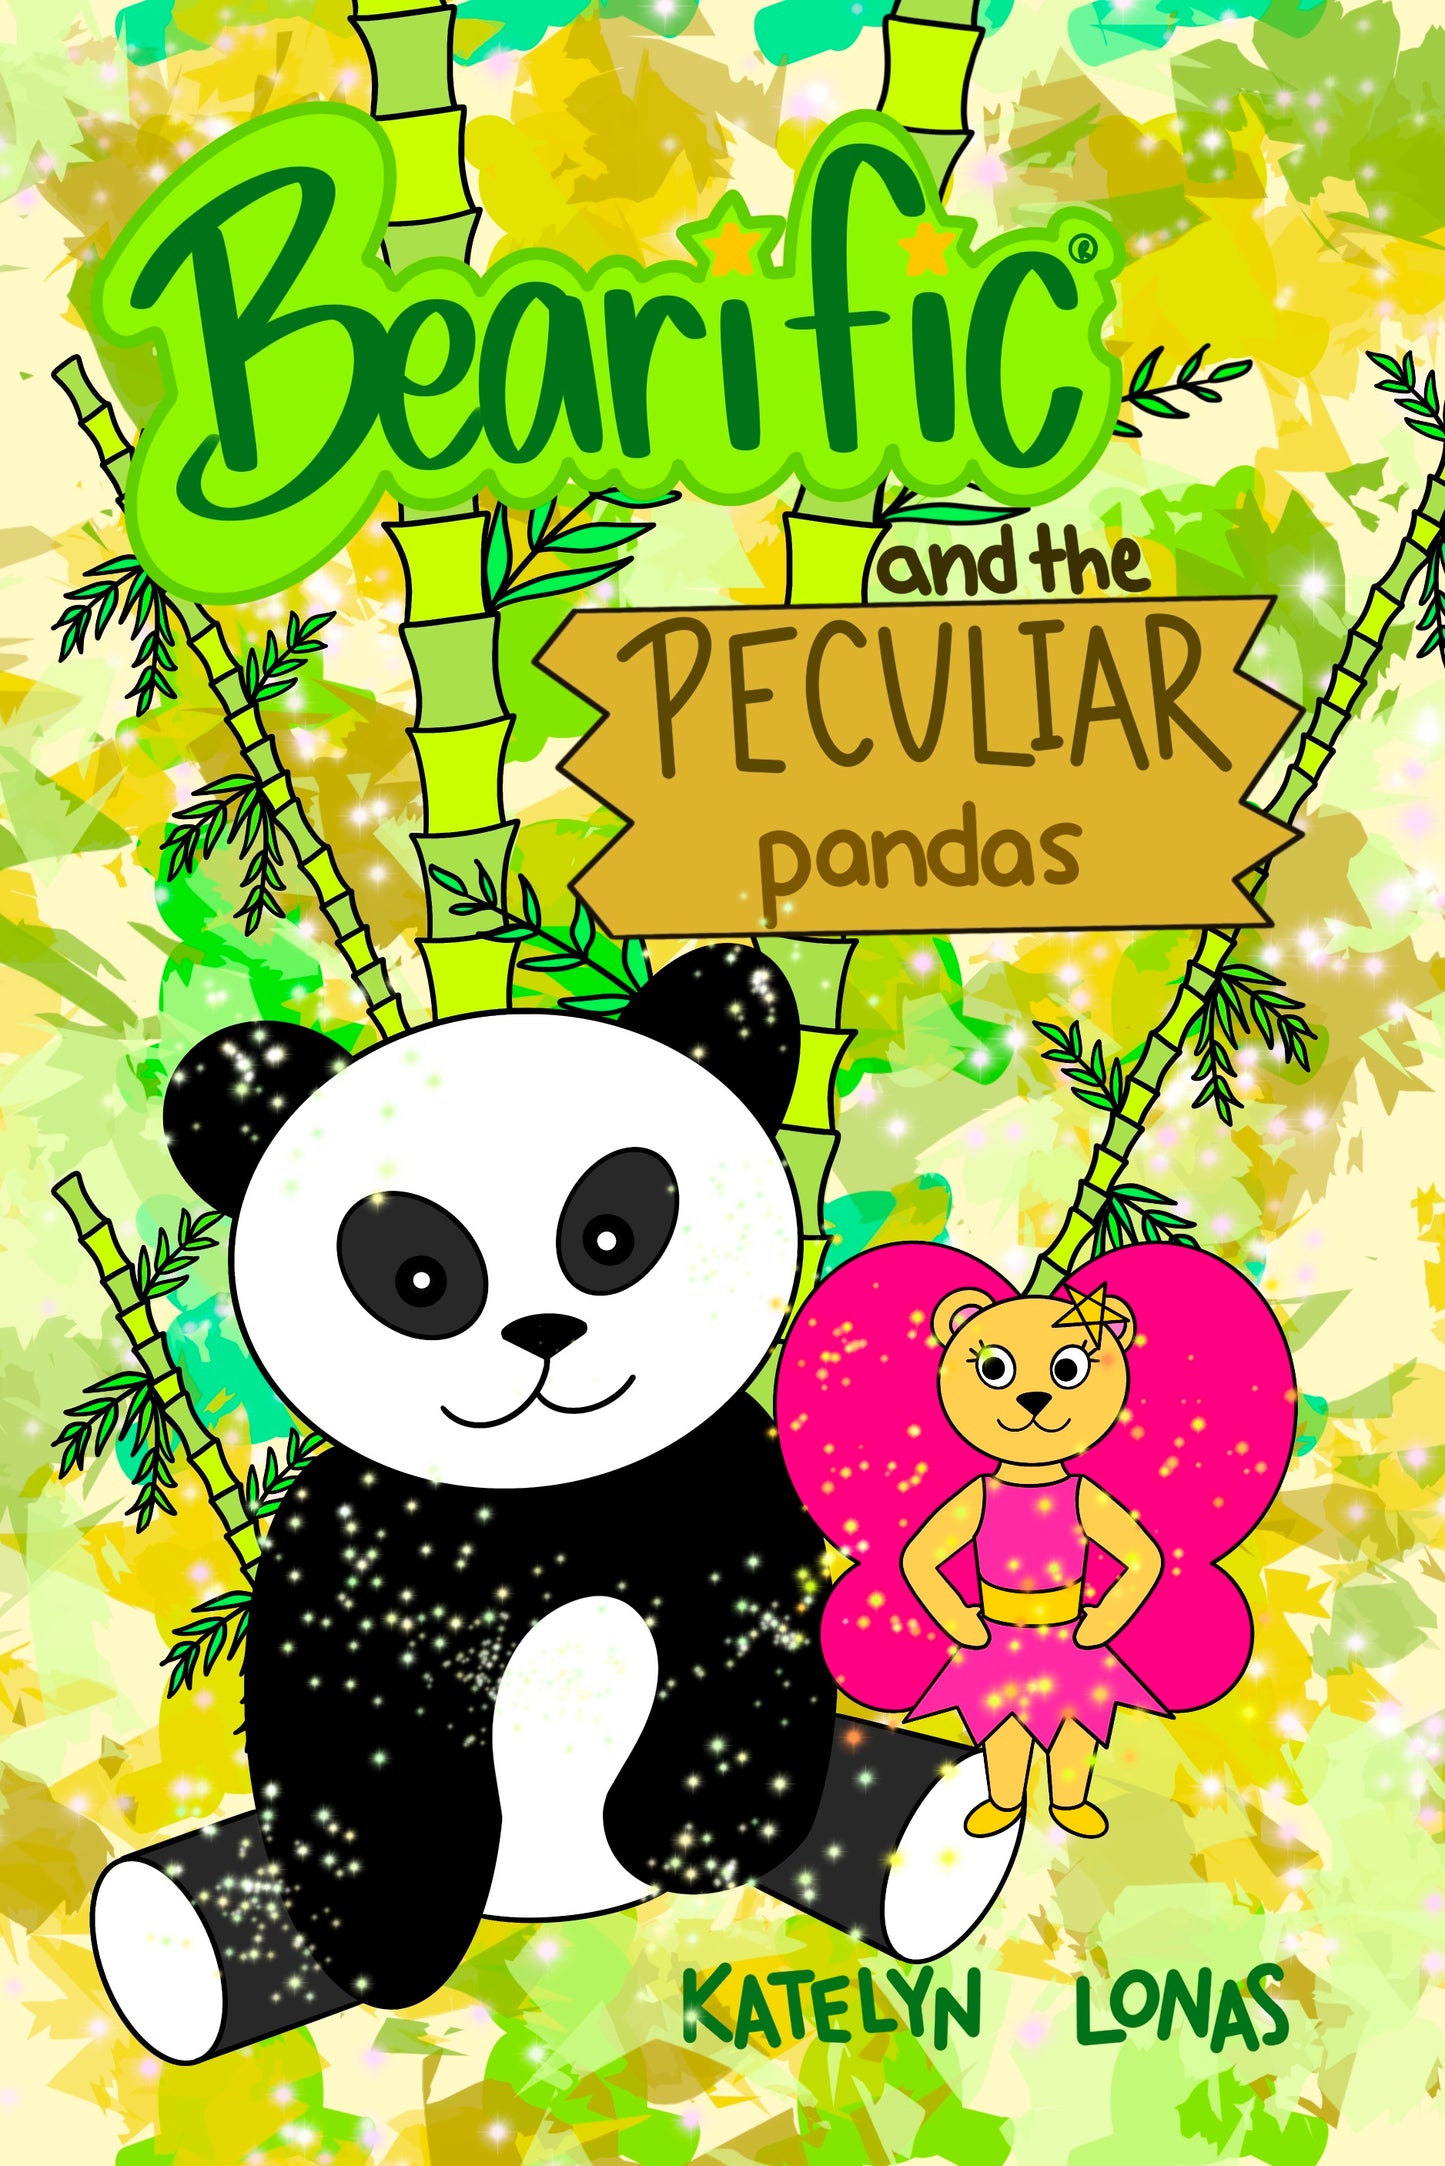 Bearific and the Peculiar Pandas